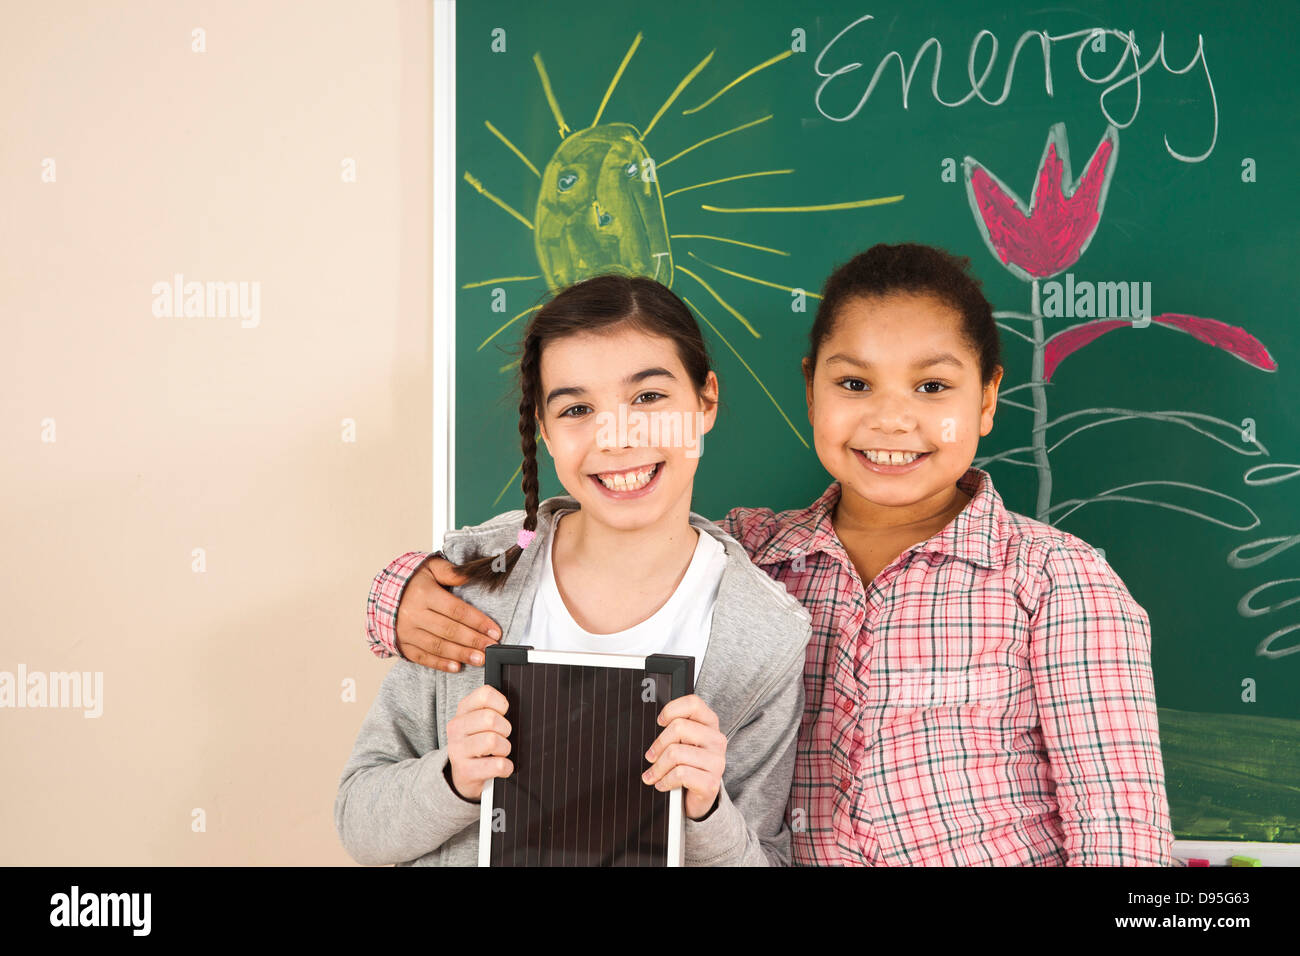 Mädchen lernen über Alternative Energien im Klassenzimmer, Baden-Württemberg, Deutschland Stockfoto